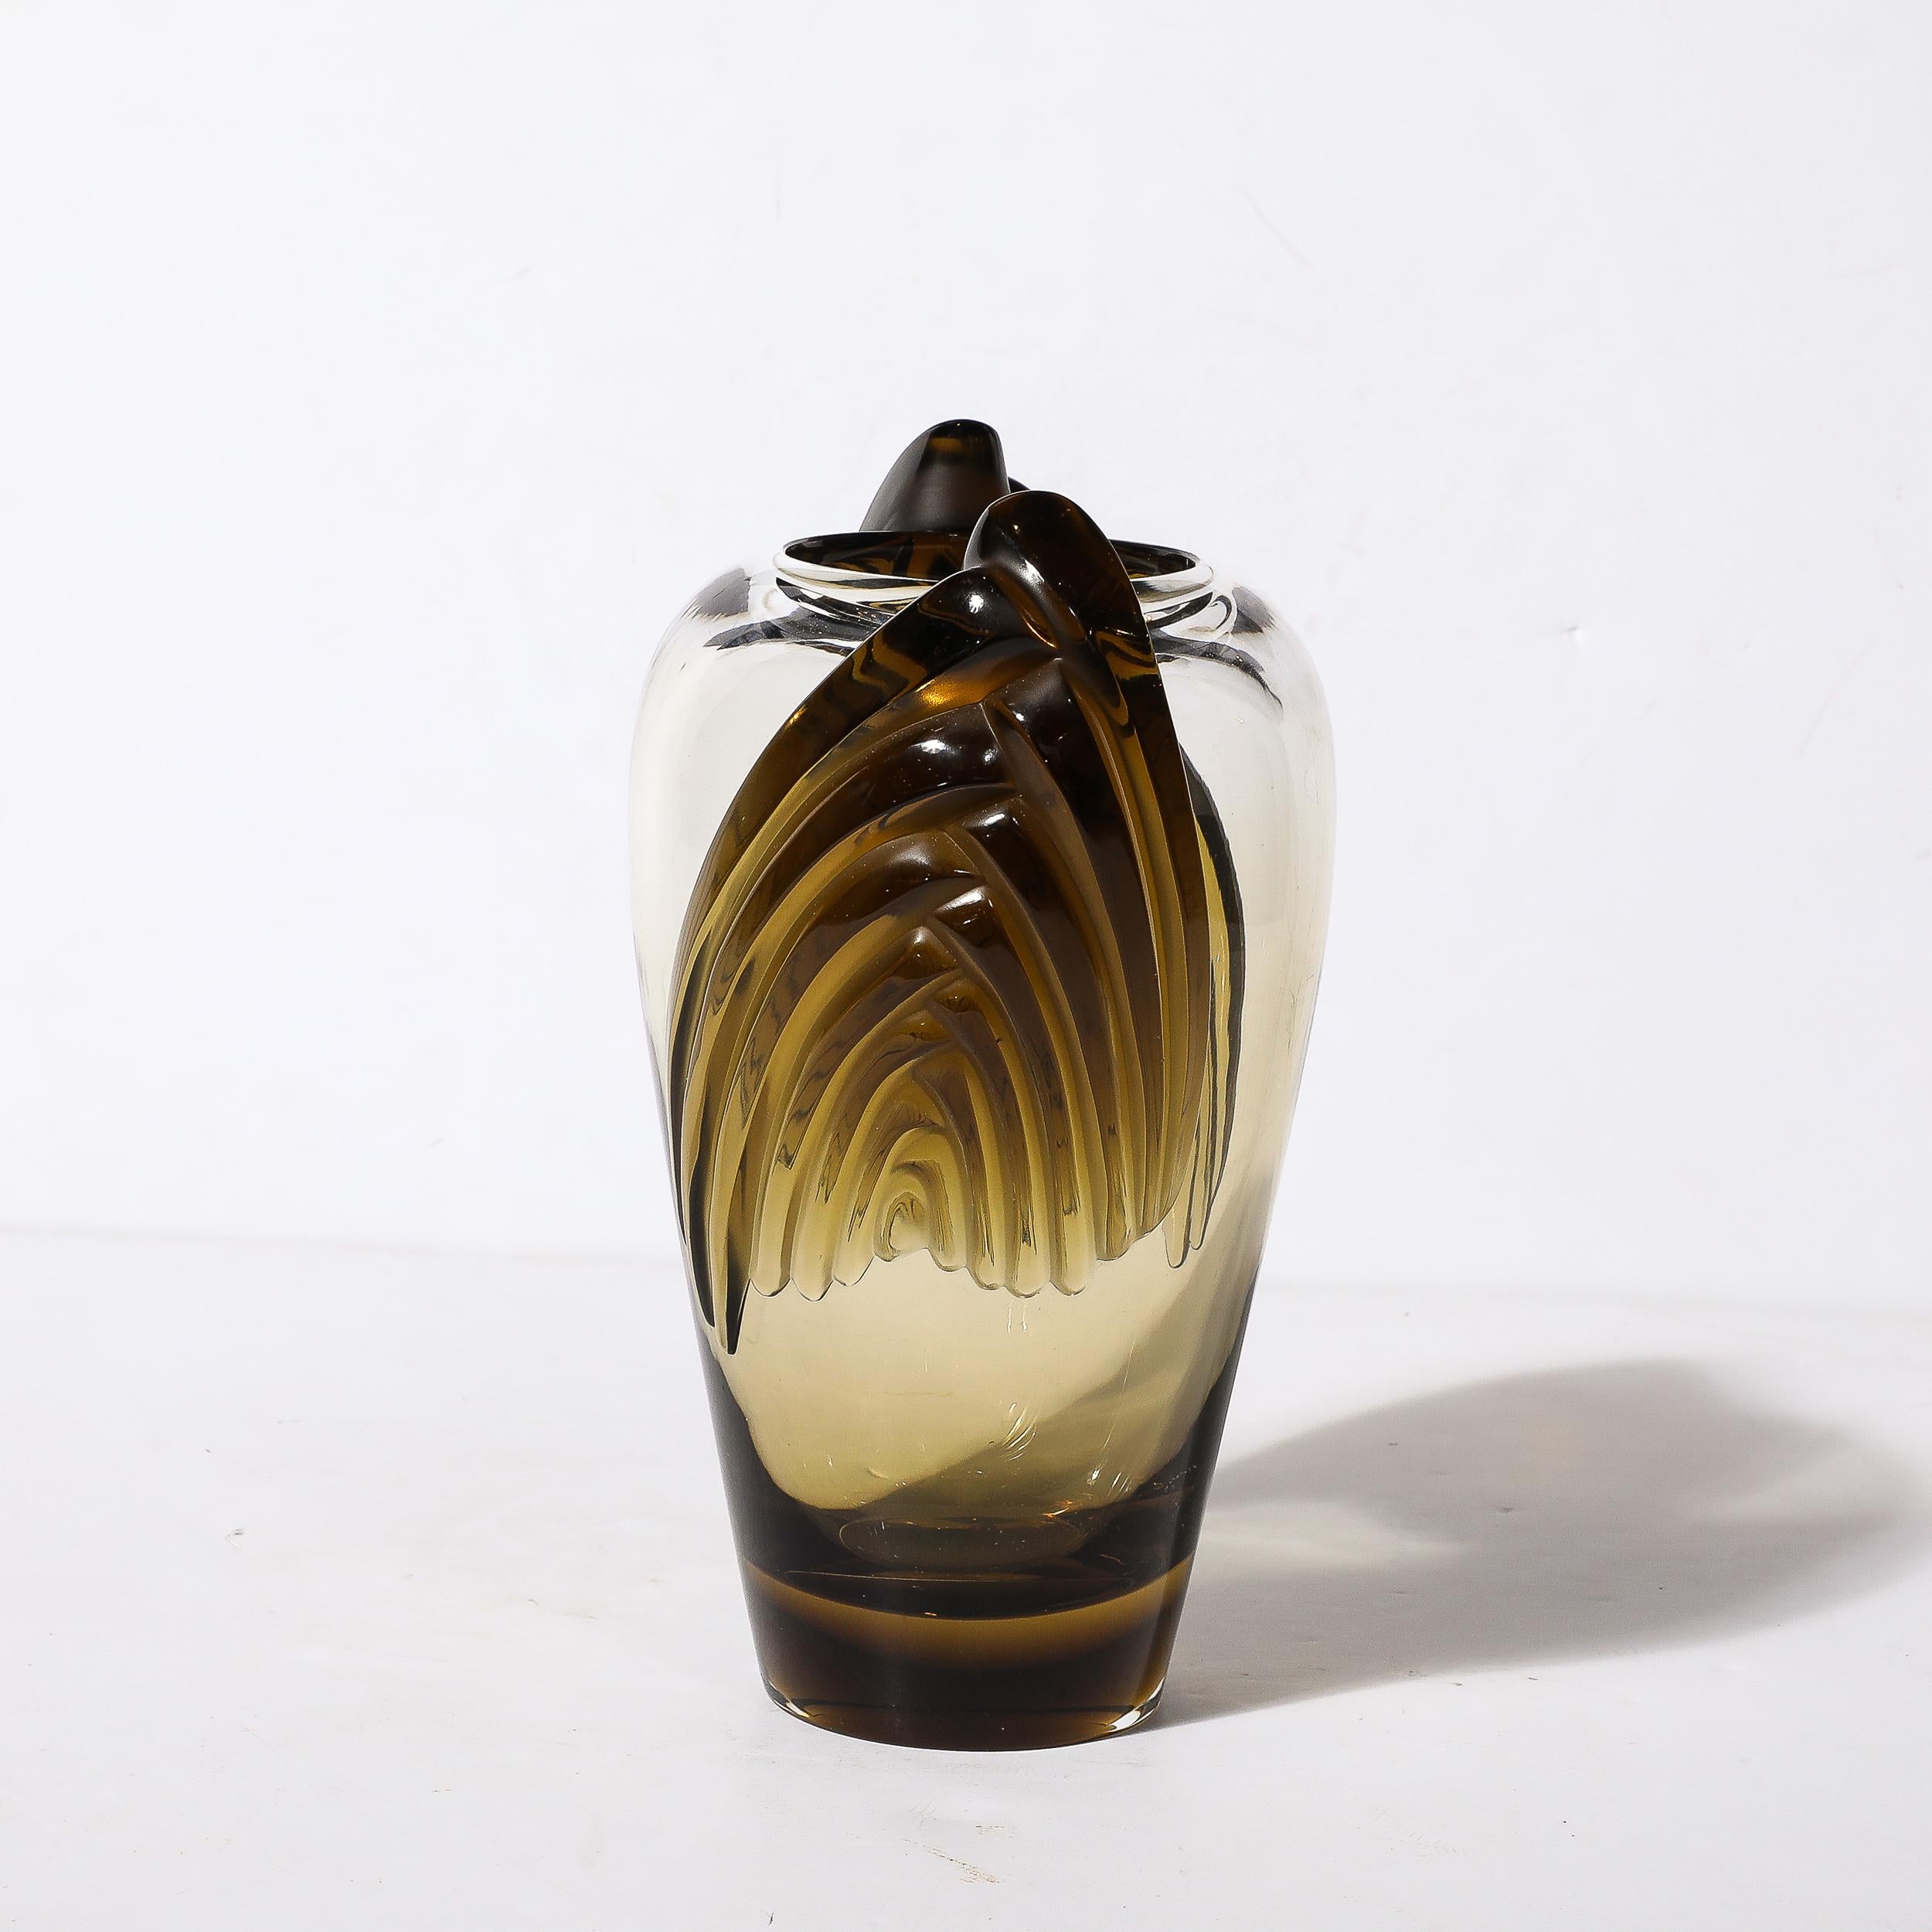 Blown Glass Art Deco Style Marrakech Vase signed Lalique